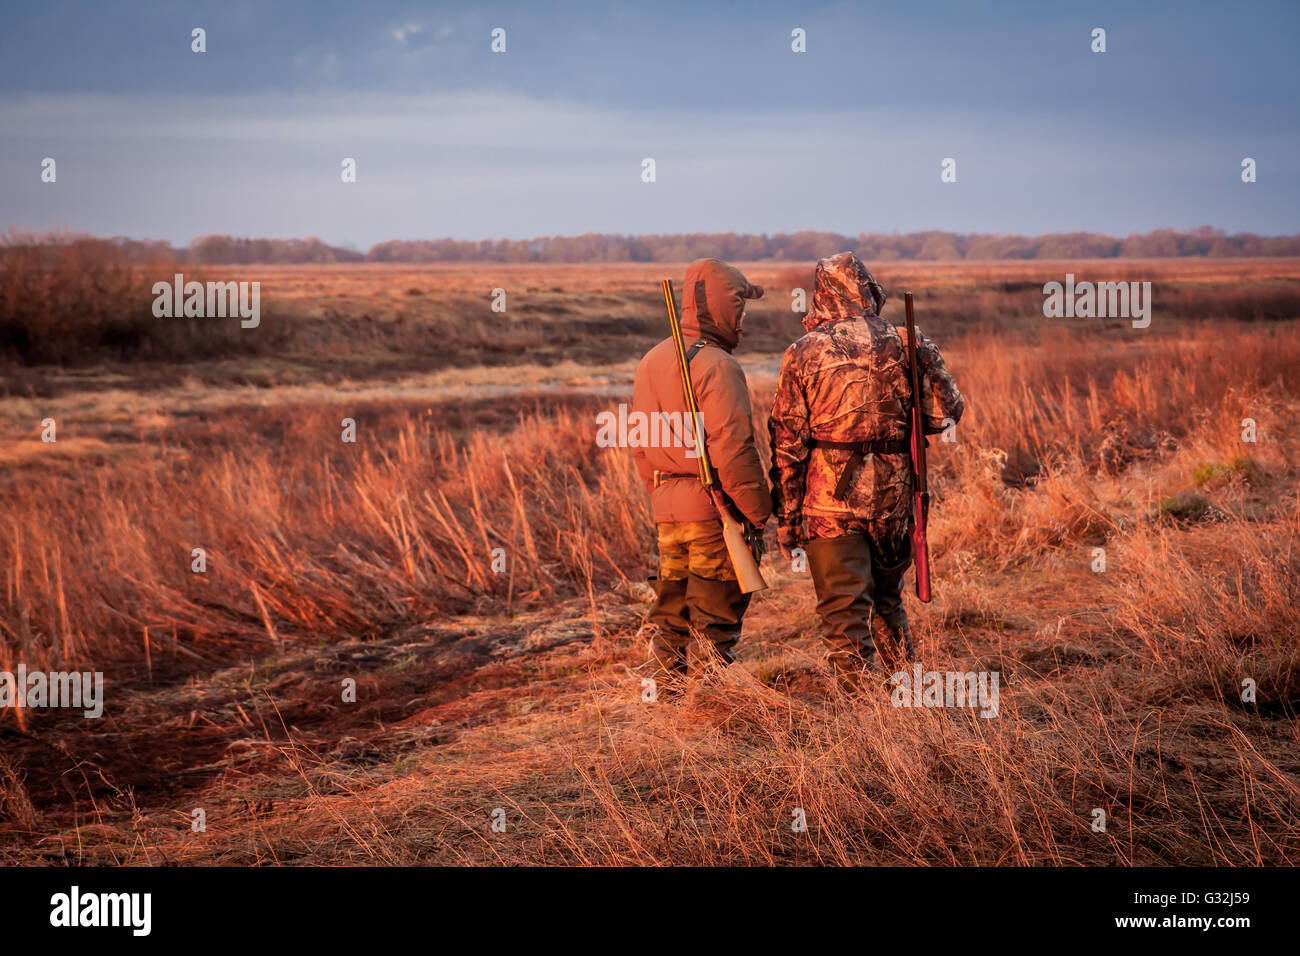 Les chasseurs à la recherche de proies au cours de la chasse en milieu rural domaine pendant le lever du soleil. Domaine peint avec la couleur orange de rising sun Banque D'Images